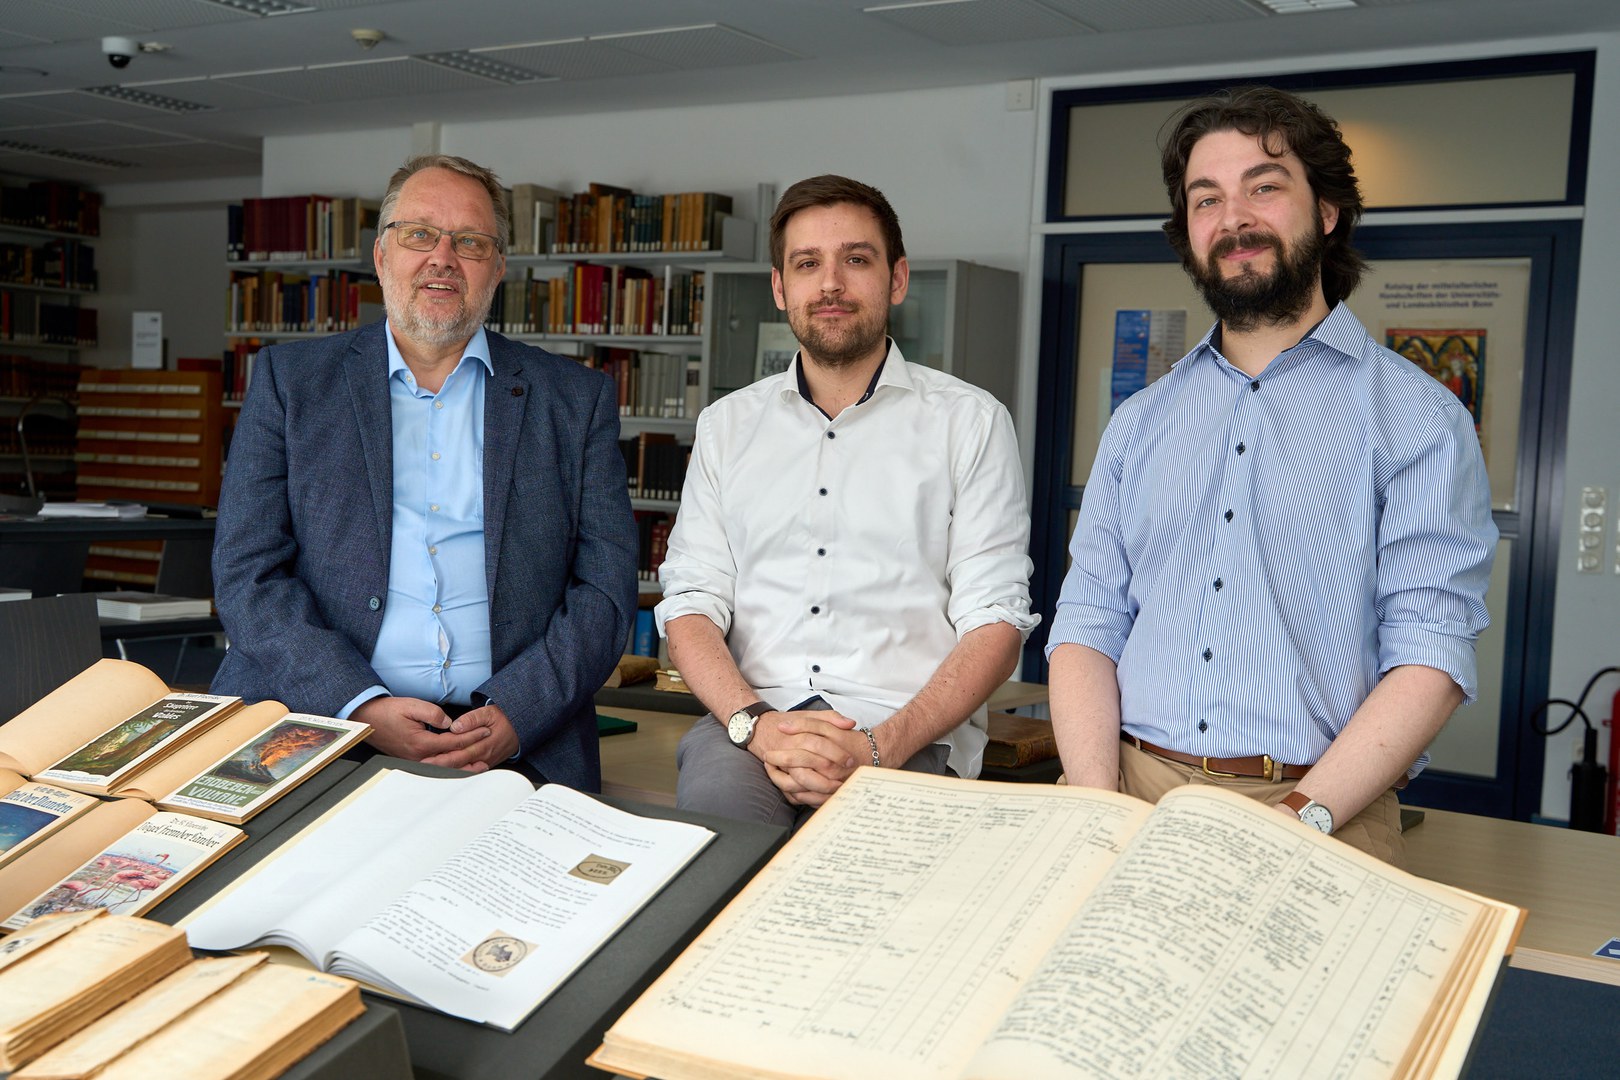 Auf der Spurensuche: Dr. Michael Herkenhoff, Philipp-Lukas Bohr und Tobias Jansen prüfen Bestände der ULB auf Restitutionsmöglichkeiten